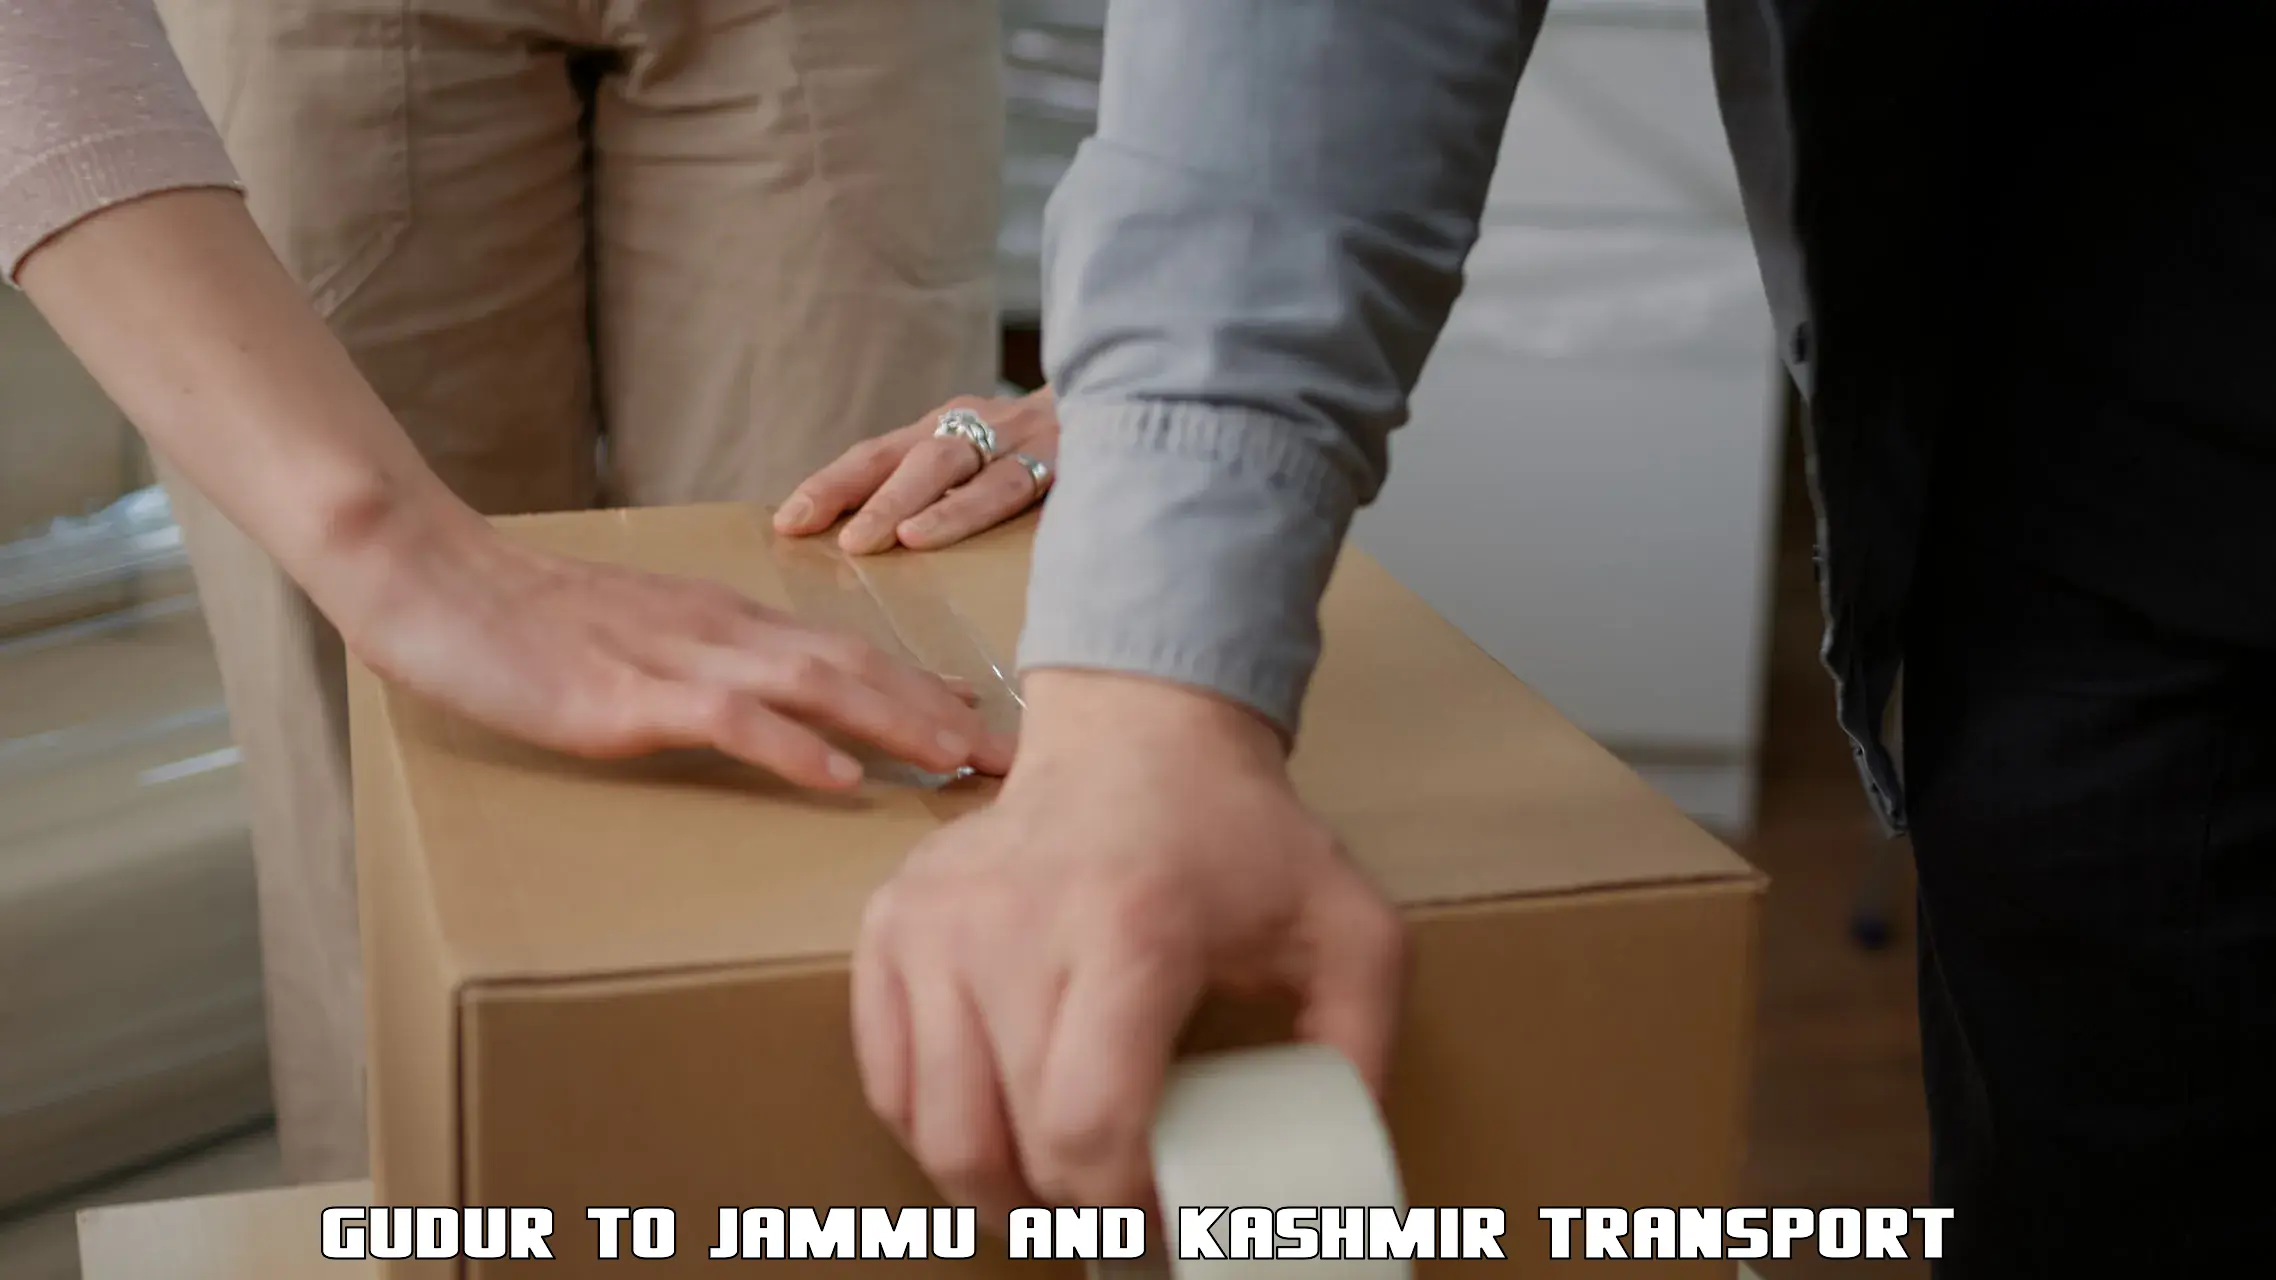 Land transport services in Gudur to Jammu